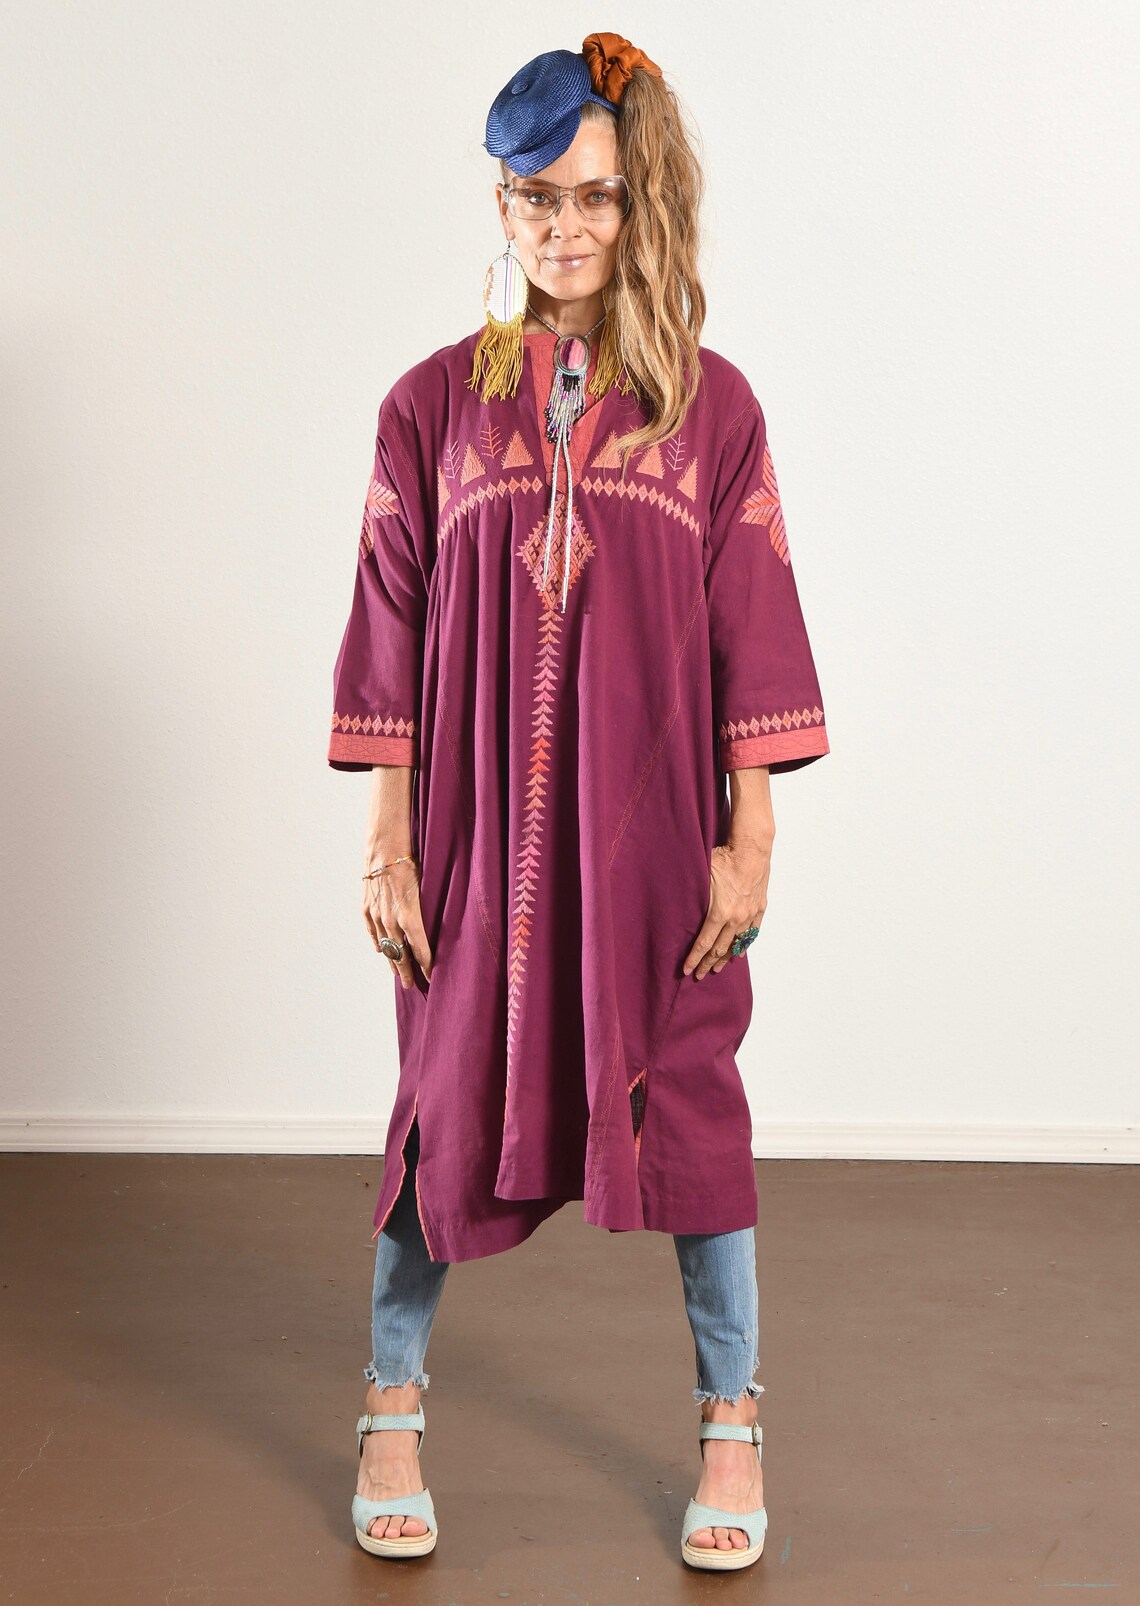 KASIDA/ Made in India/ Vintage India Dress/ Cotton India | Etsy